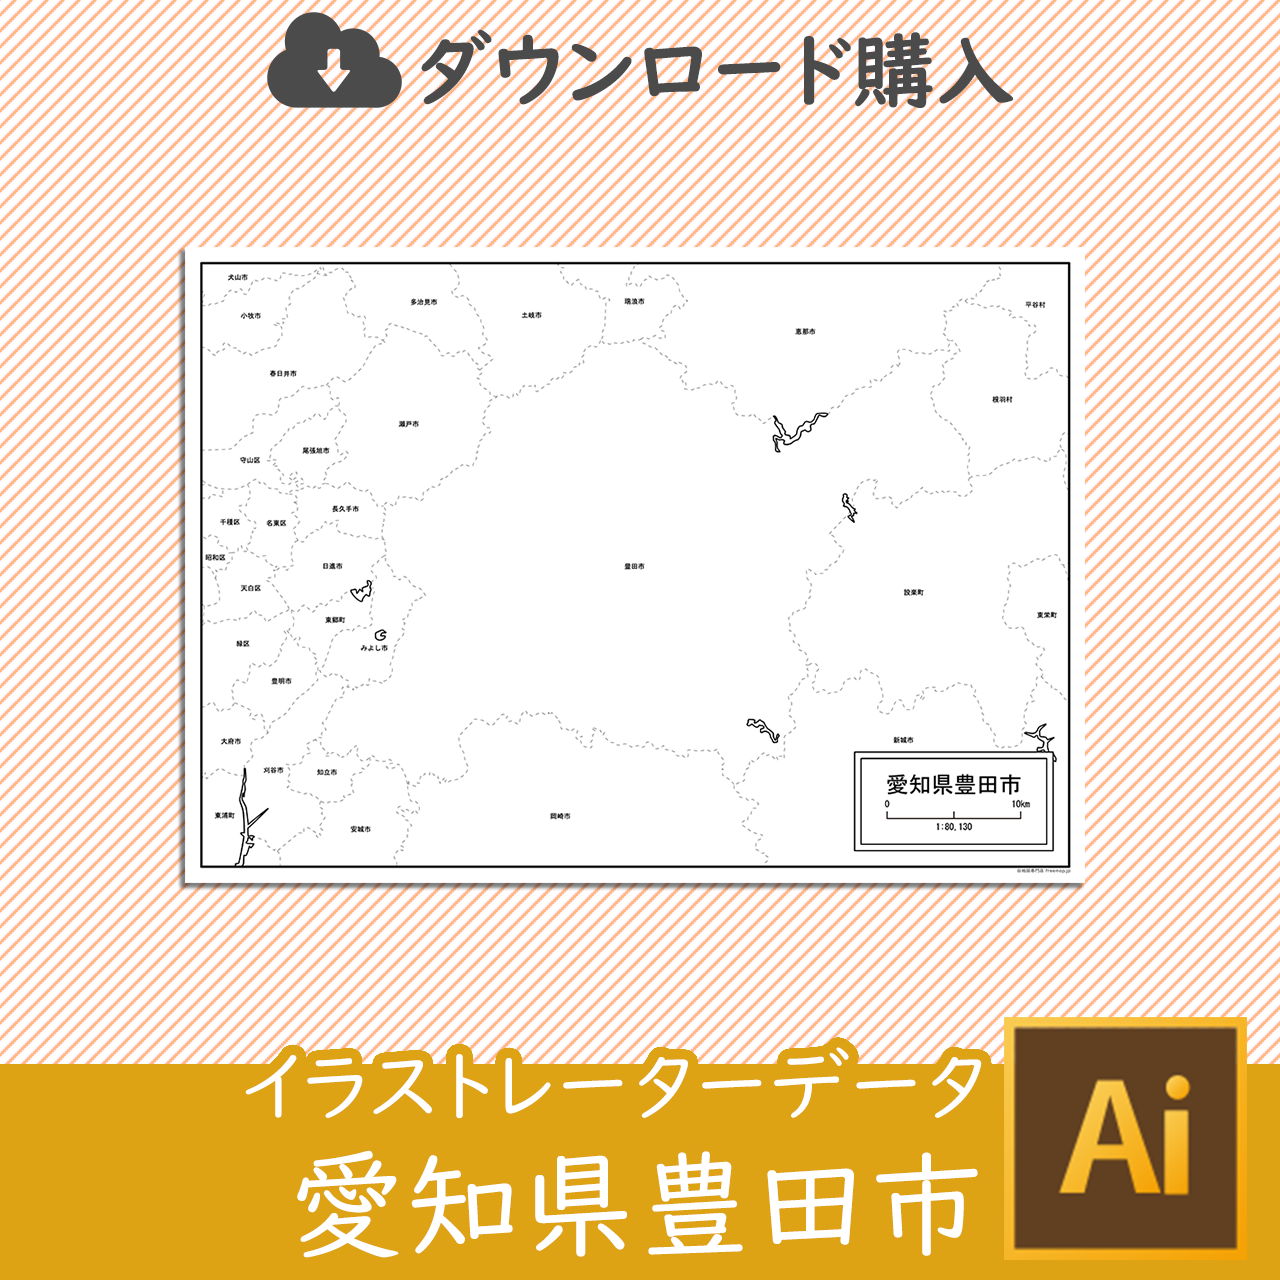 豊田市のaiデータのサムネイル画像